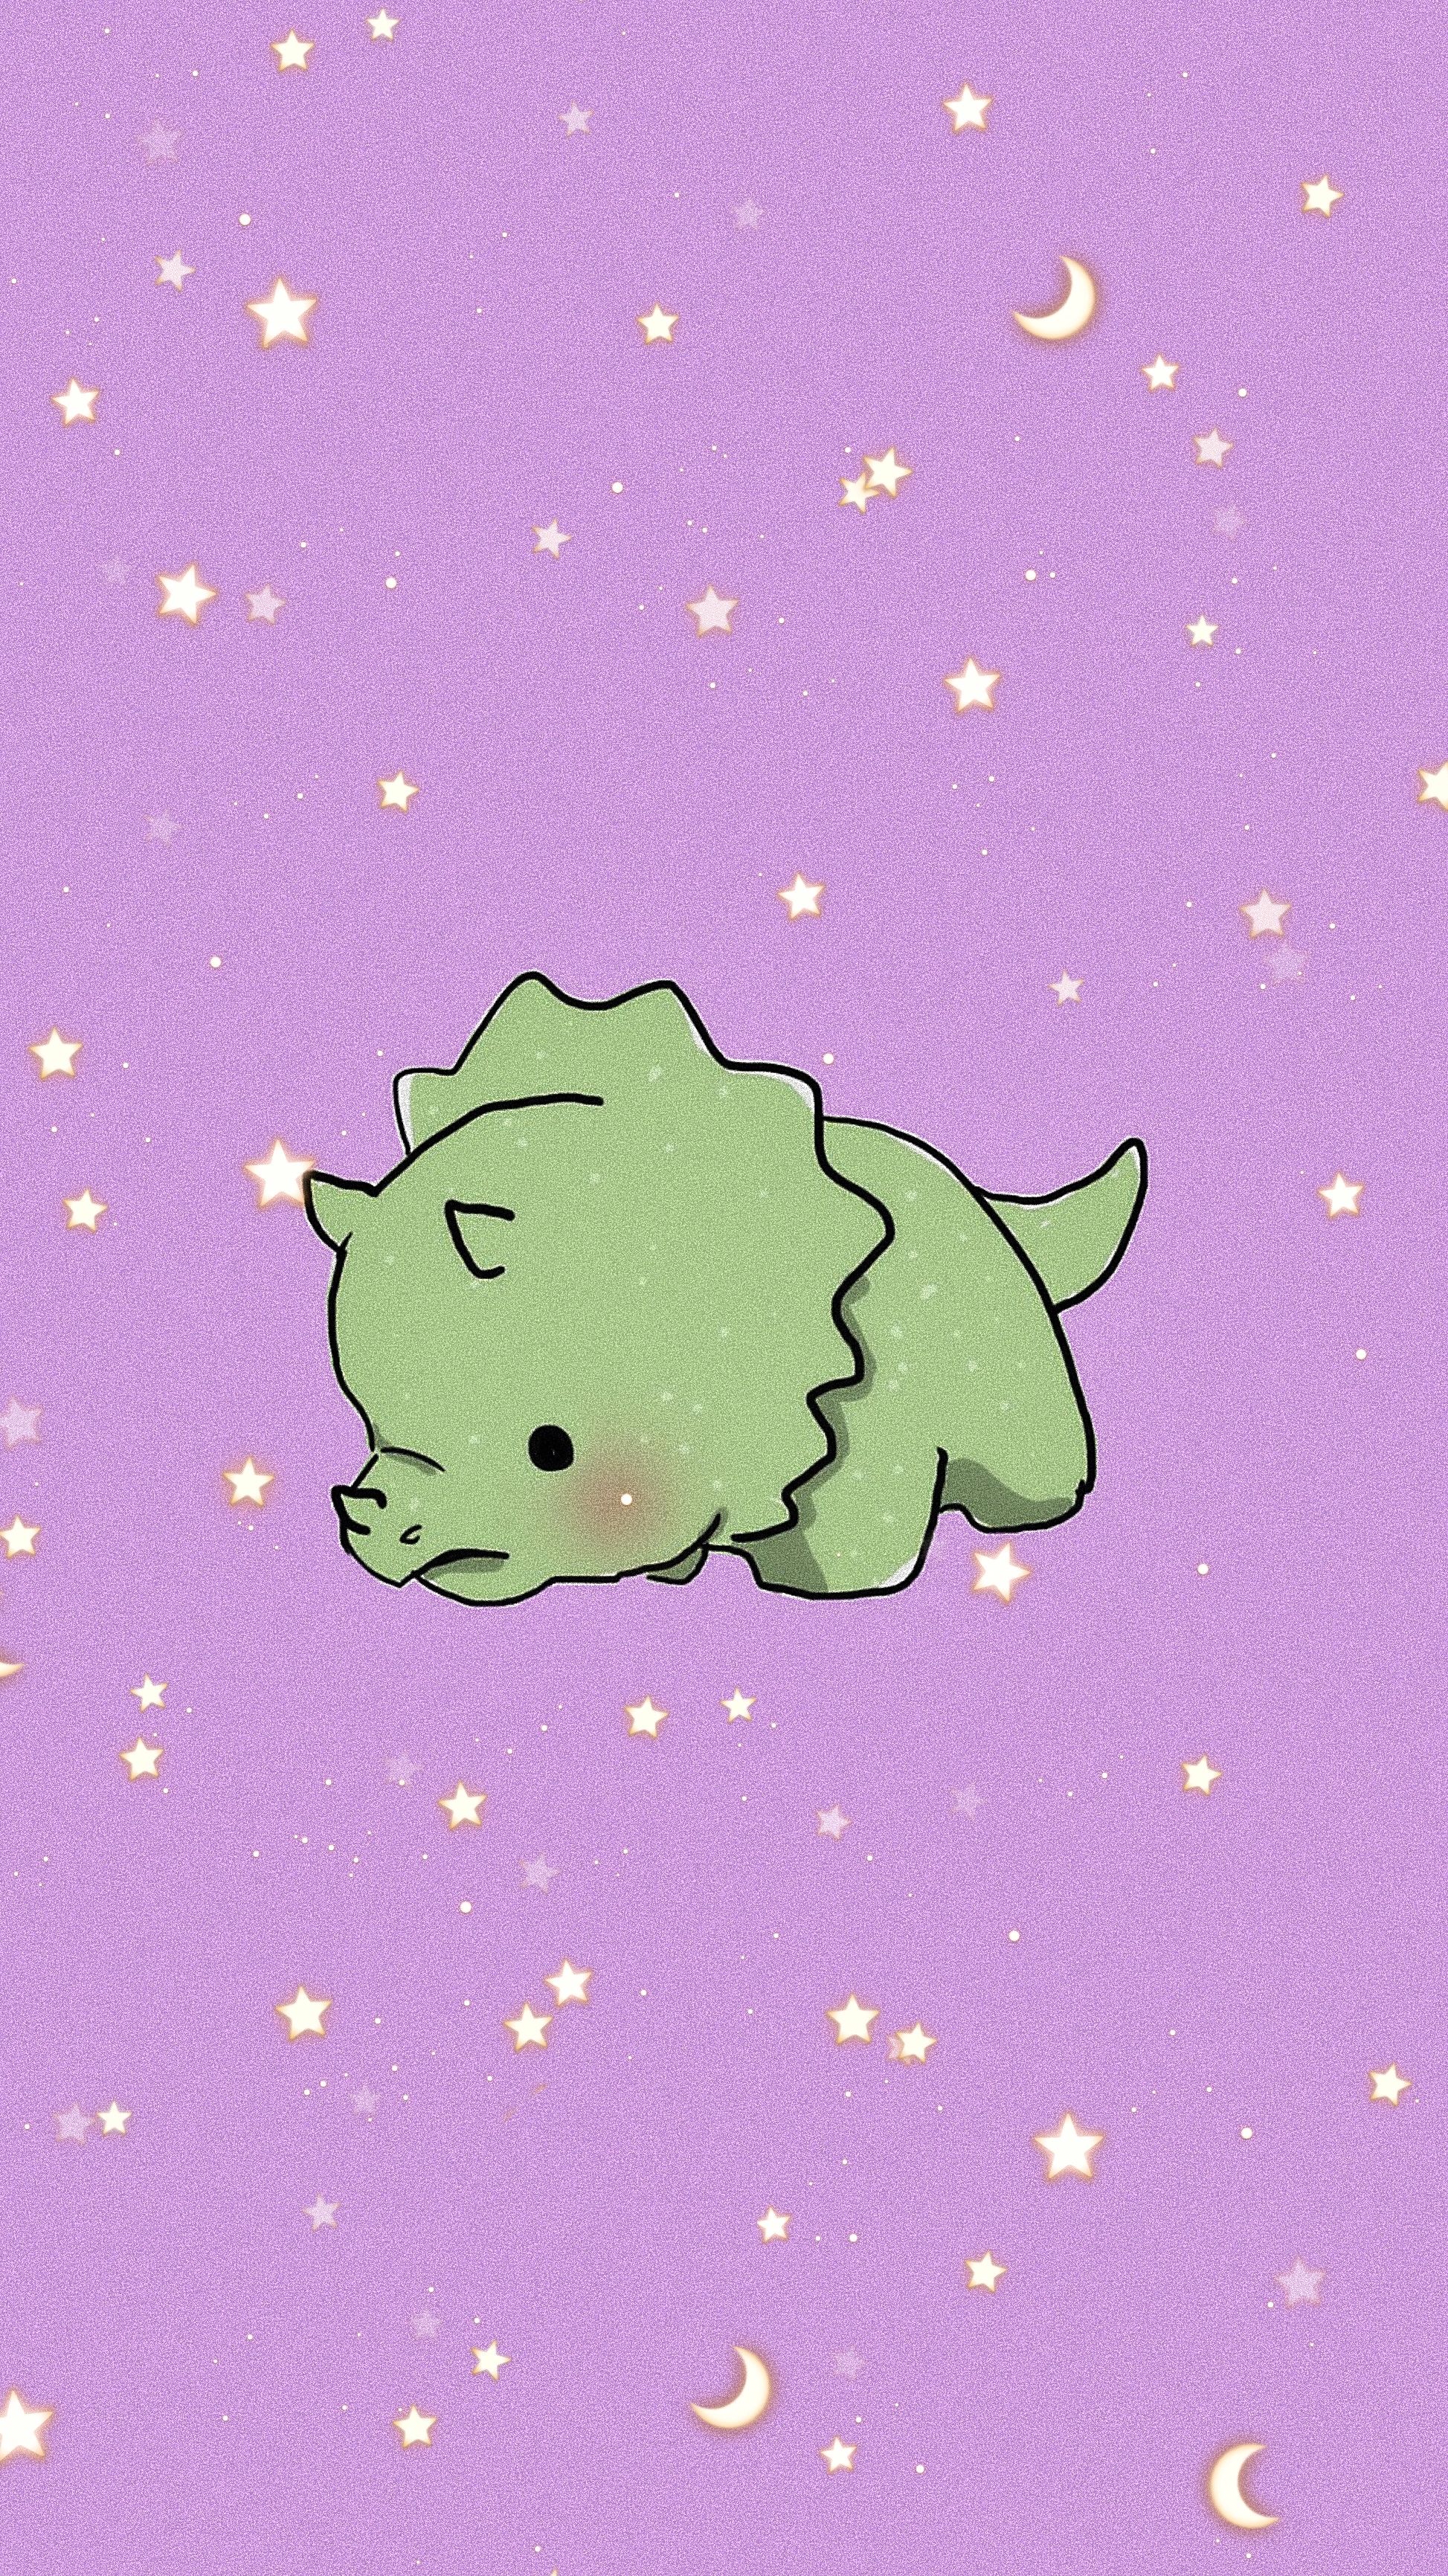 جدیدترین والپیپر بچه دایناسور با زمینه بفش پر از ستاره